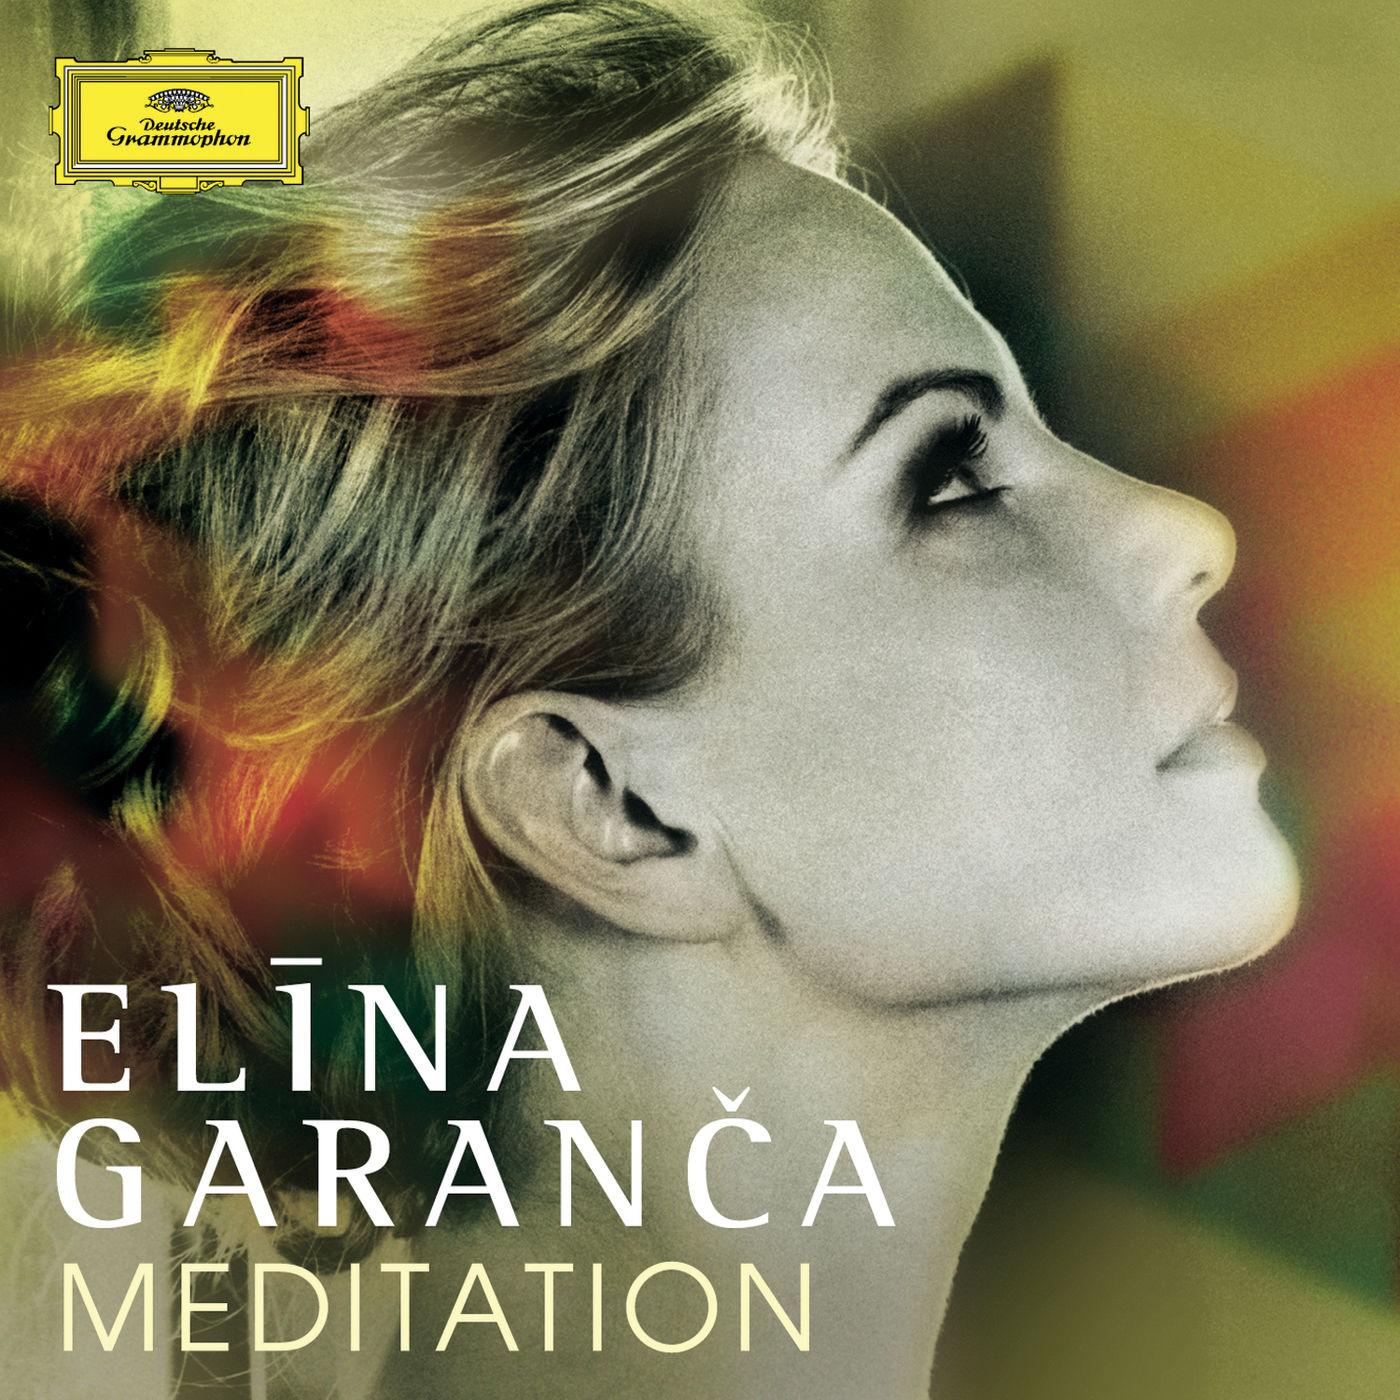 Elina Garanca – Meditation (2014) [FLAC 24bit/96kHz]